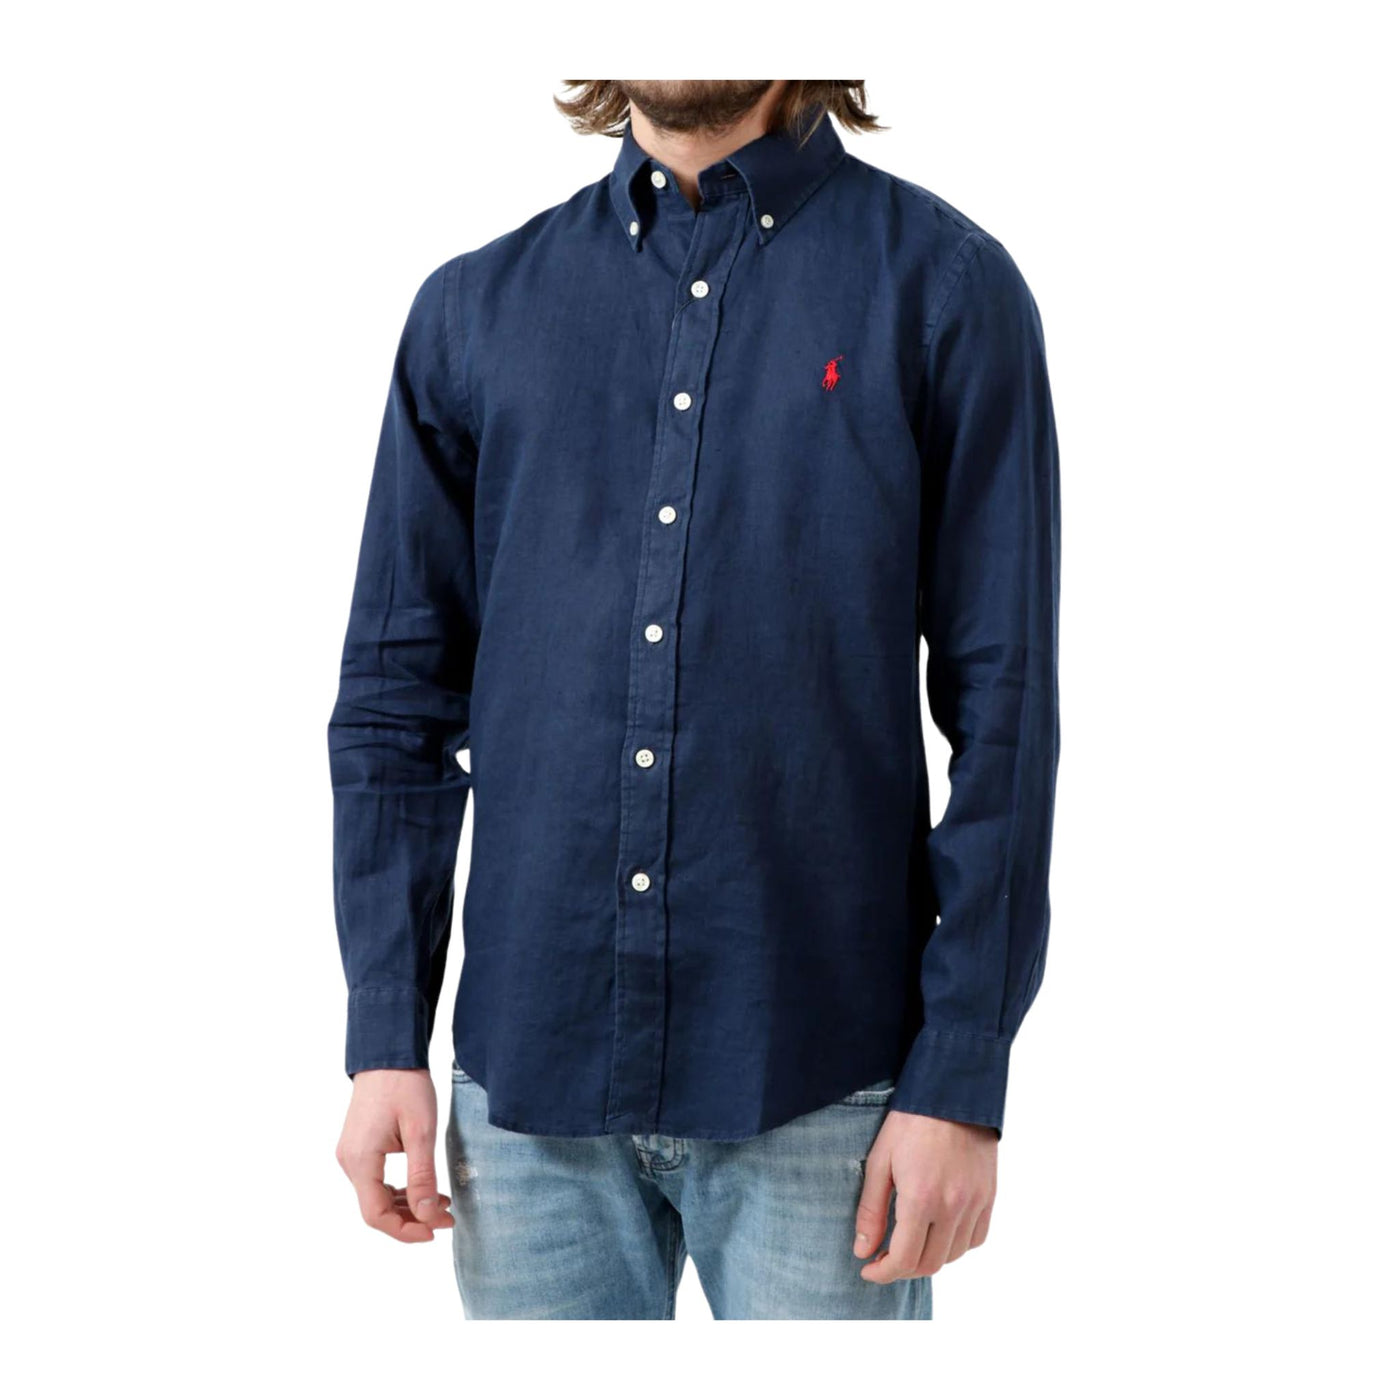 Blue button-down men's shirt